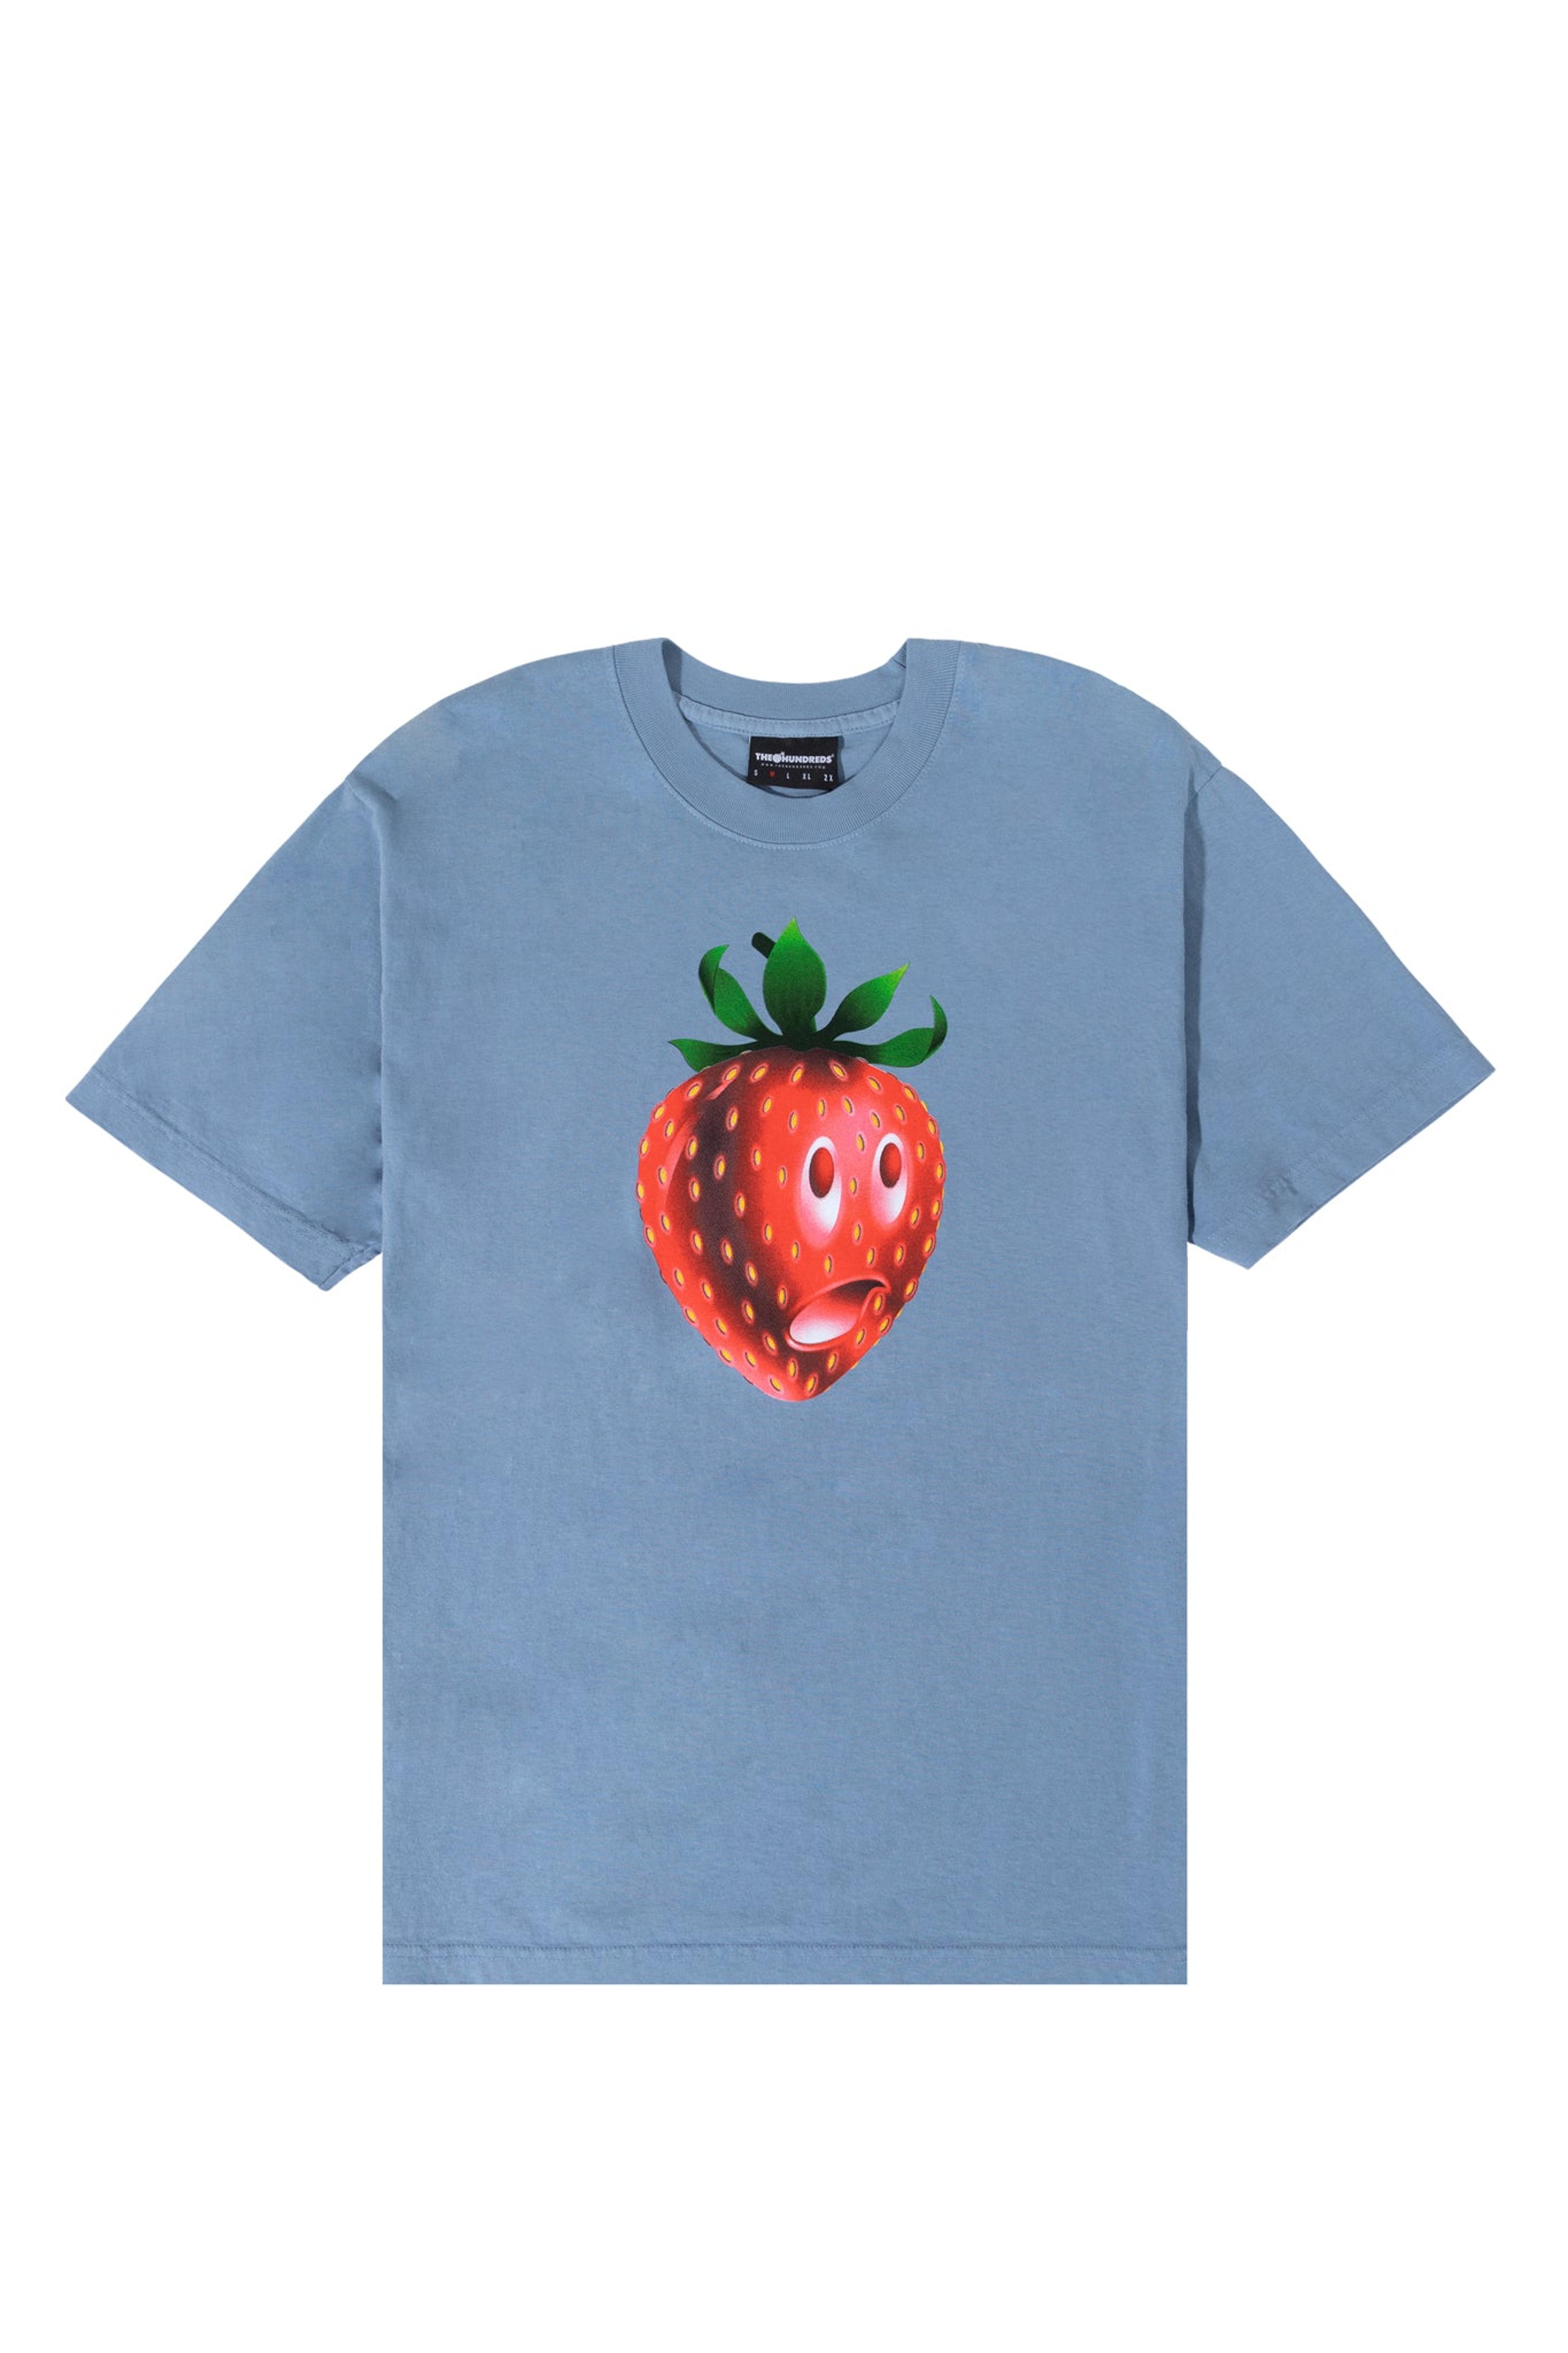 Strawberry Adam T-Shirt